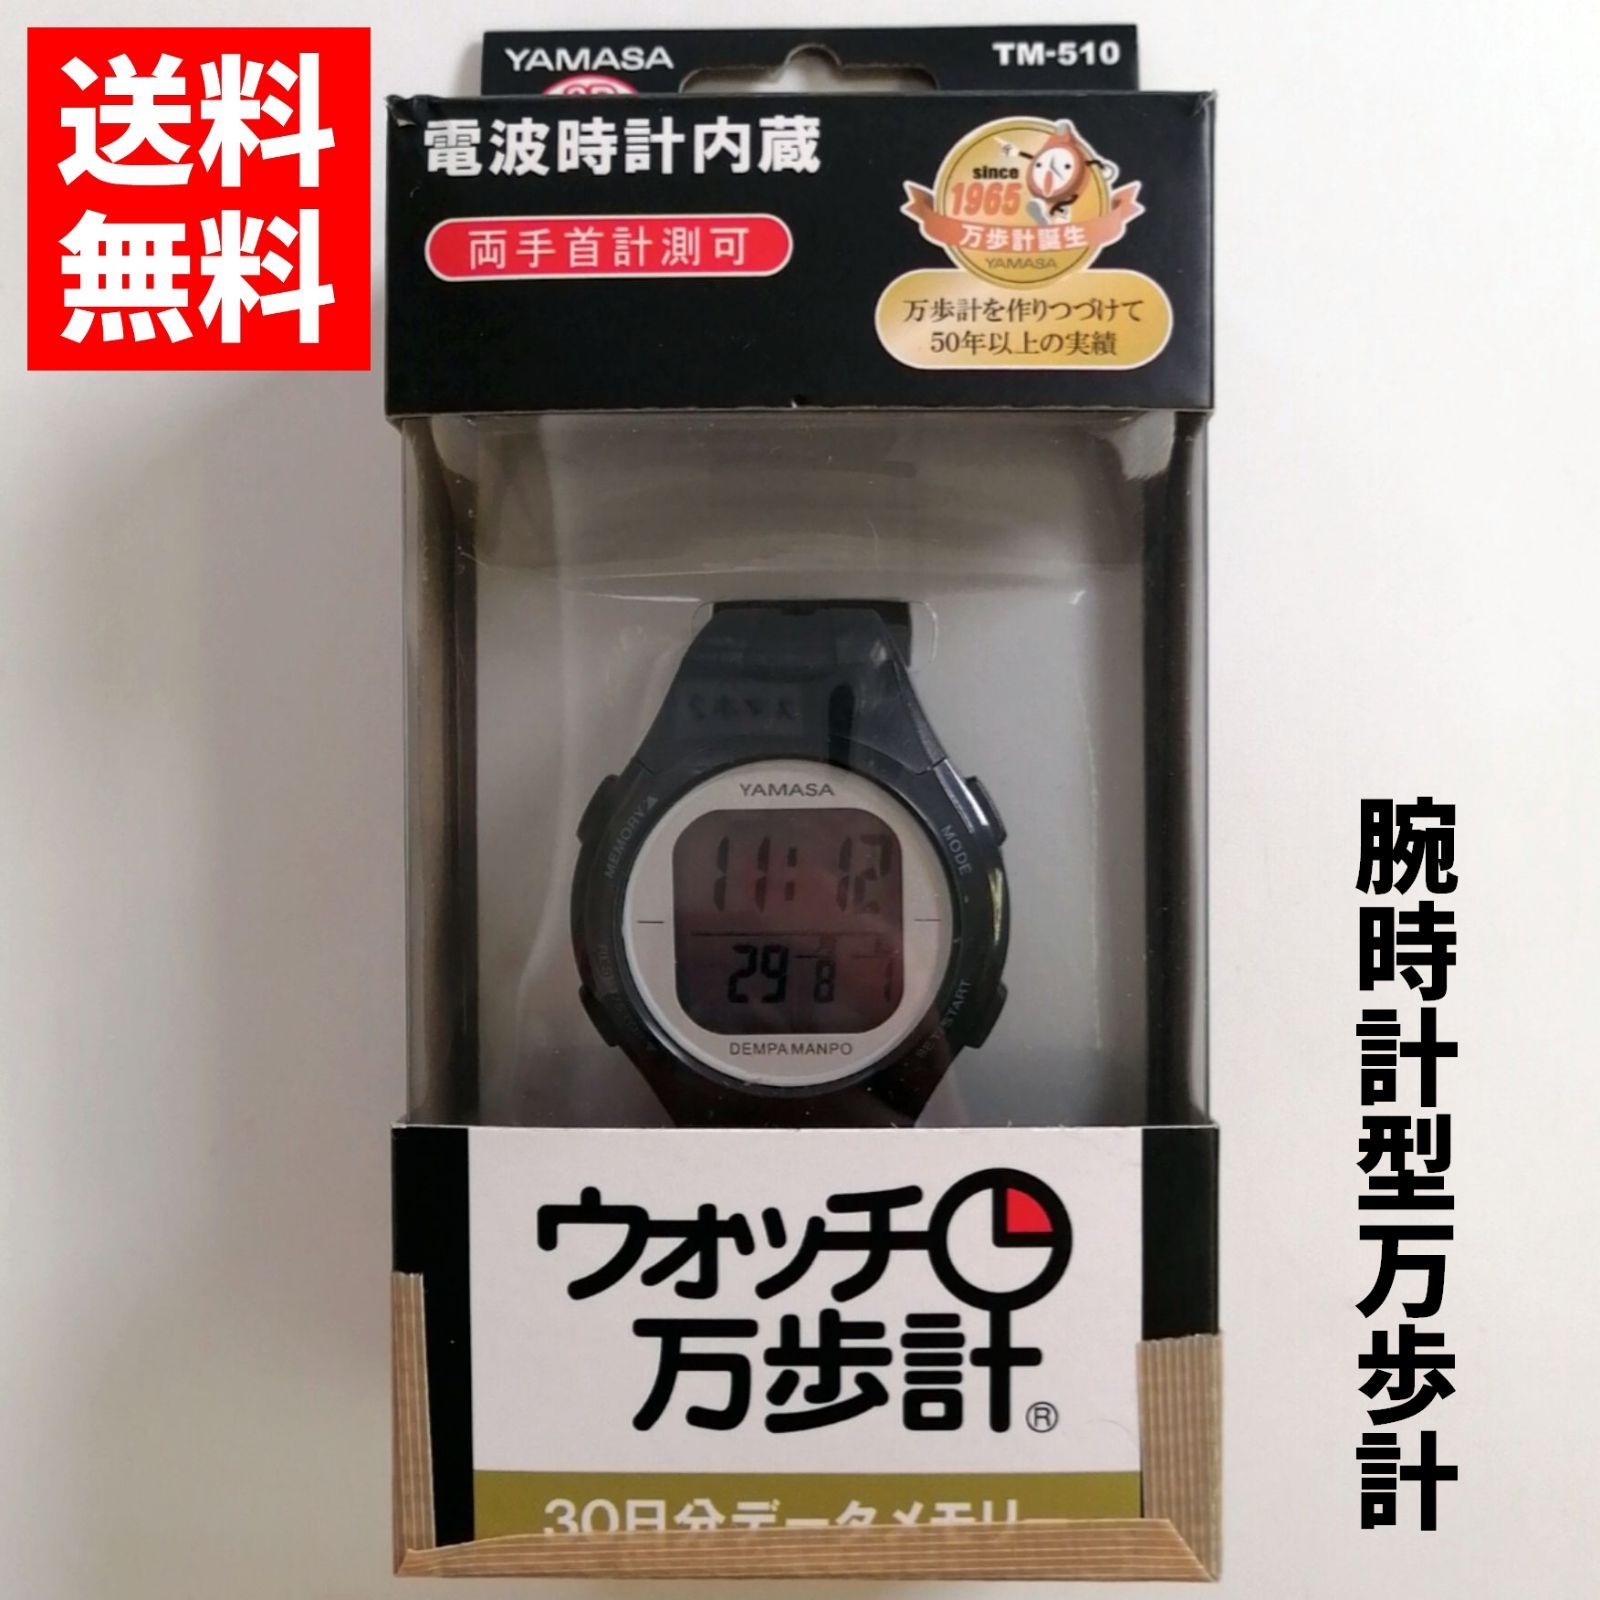 山佐 YAMASA ウォッチ万歩計 腕時計タイプ 電波時計 DEMPA MANPO ブラック×シルバー TM-510BS 0203223